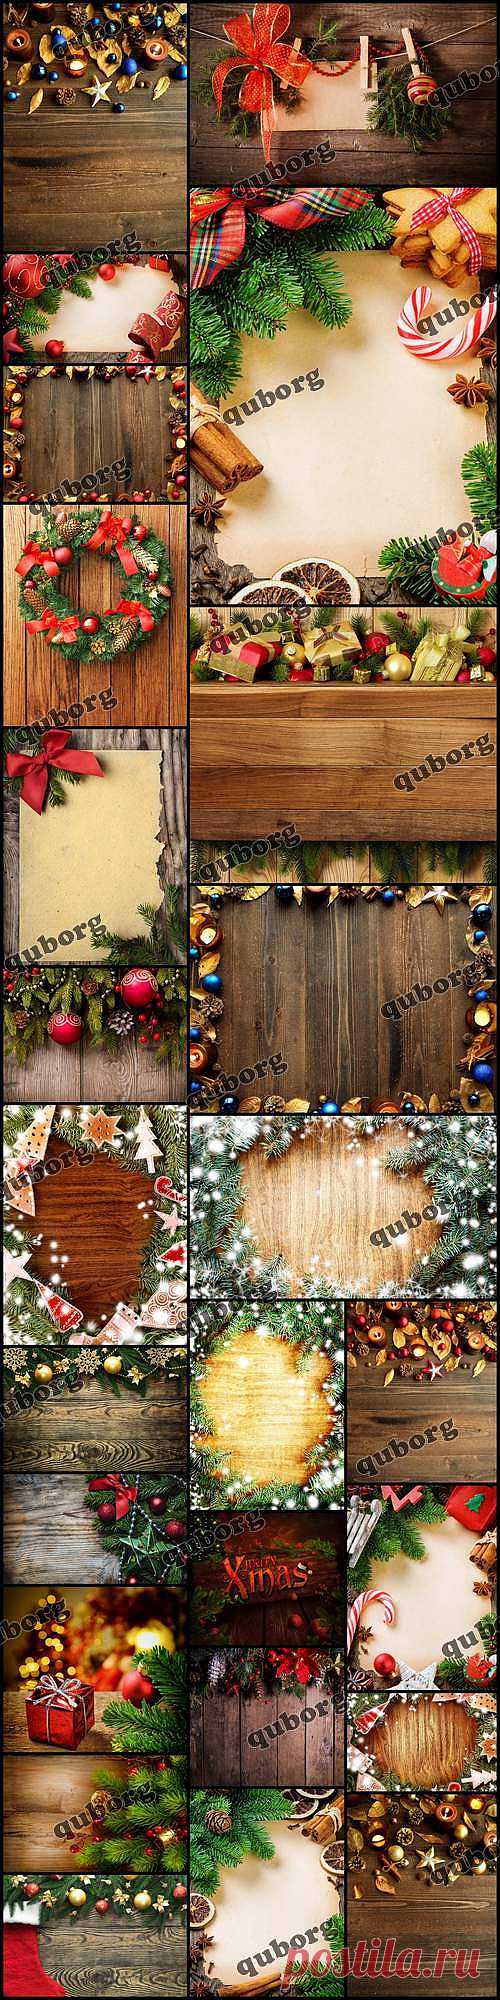 Stock Photos - Christmas, New Year Decorations on Wooden Background » RandL.ru - Все о графике, photoshop и дизайне. Скачать бесплатно photoshop, фото, картинки, обои, рисунки, иконки, клипарты, шаблоны.